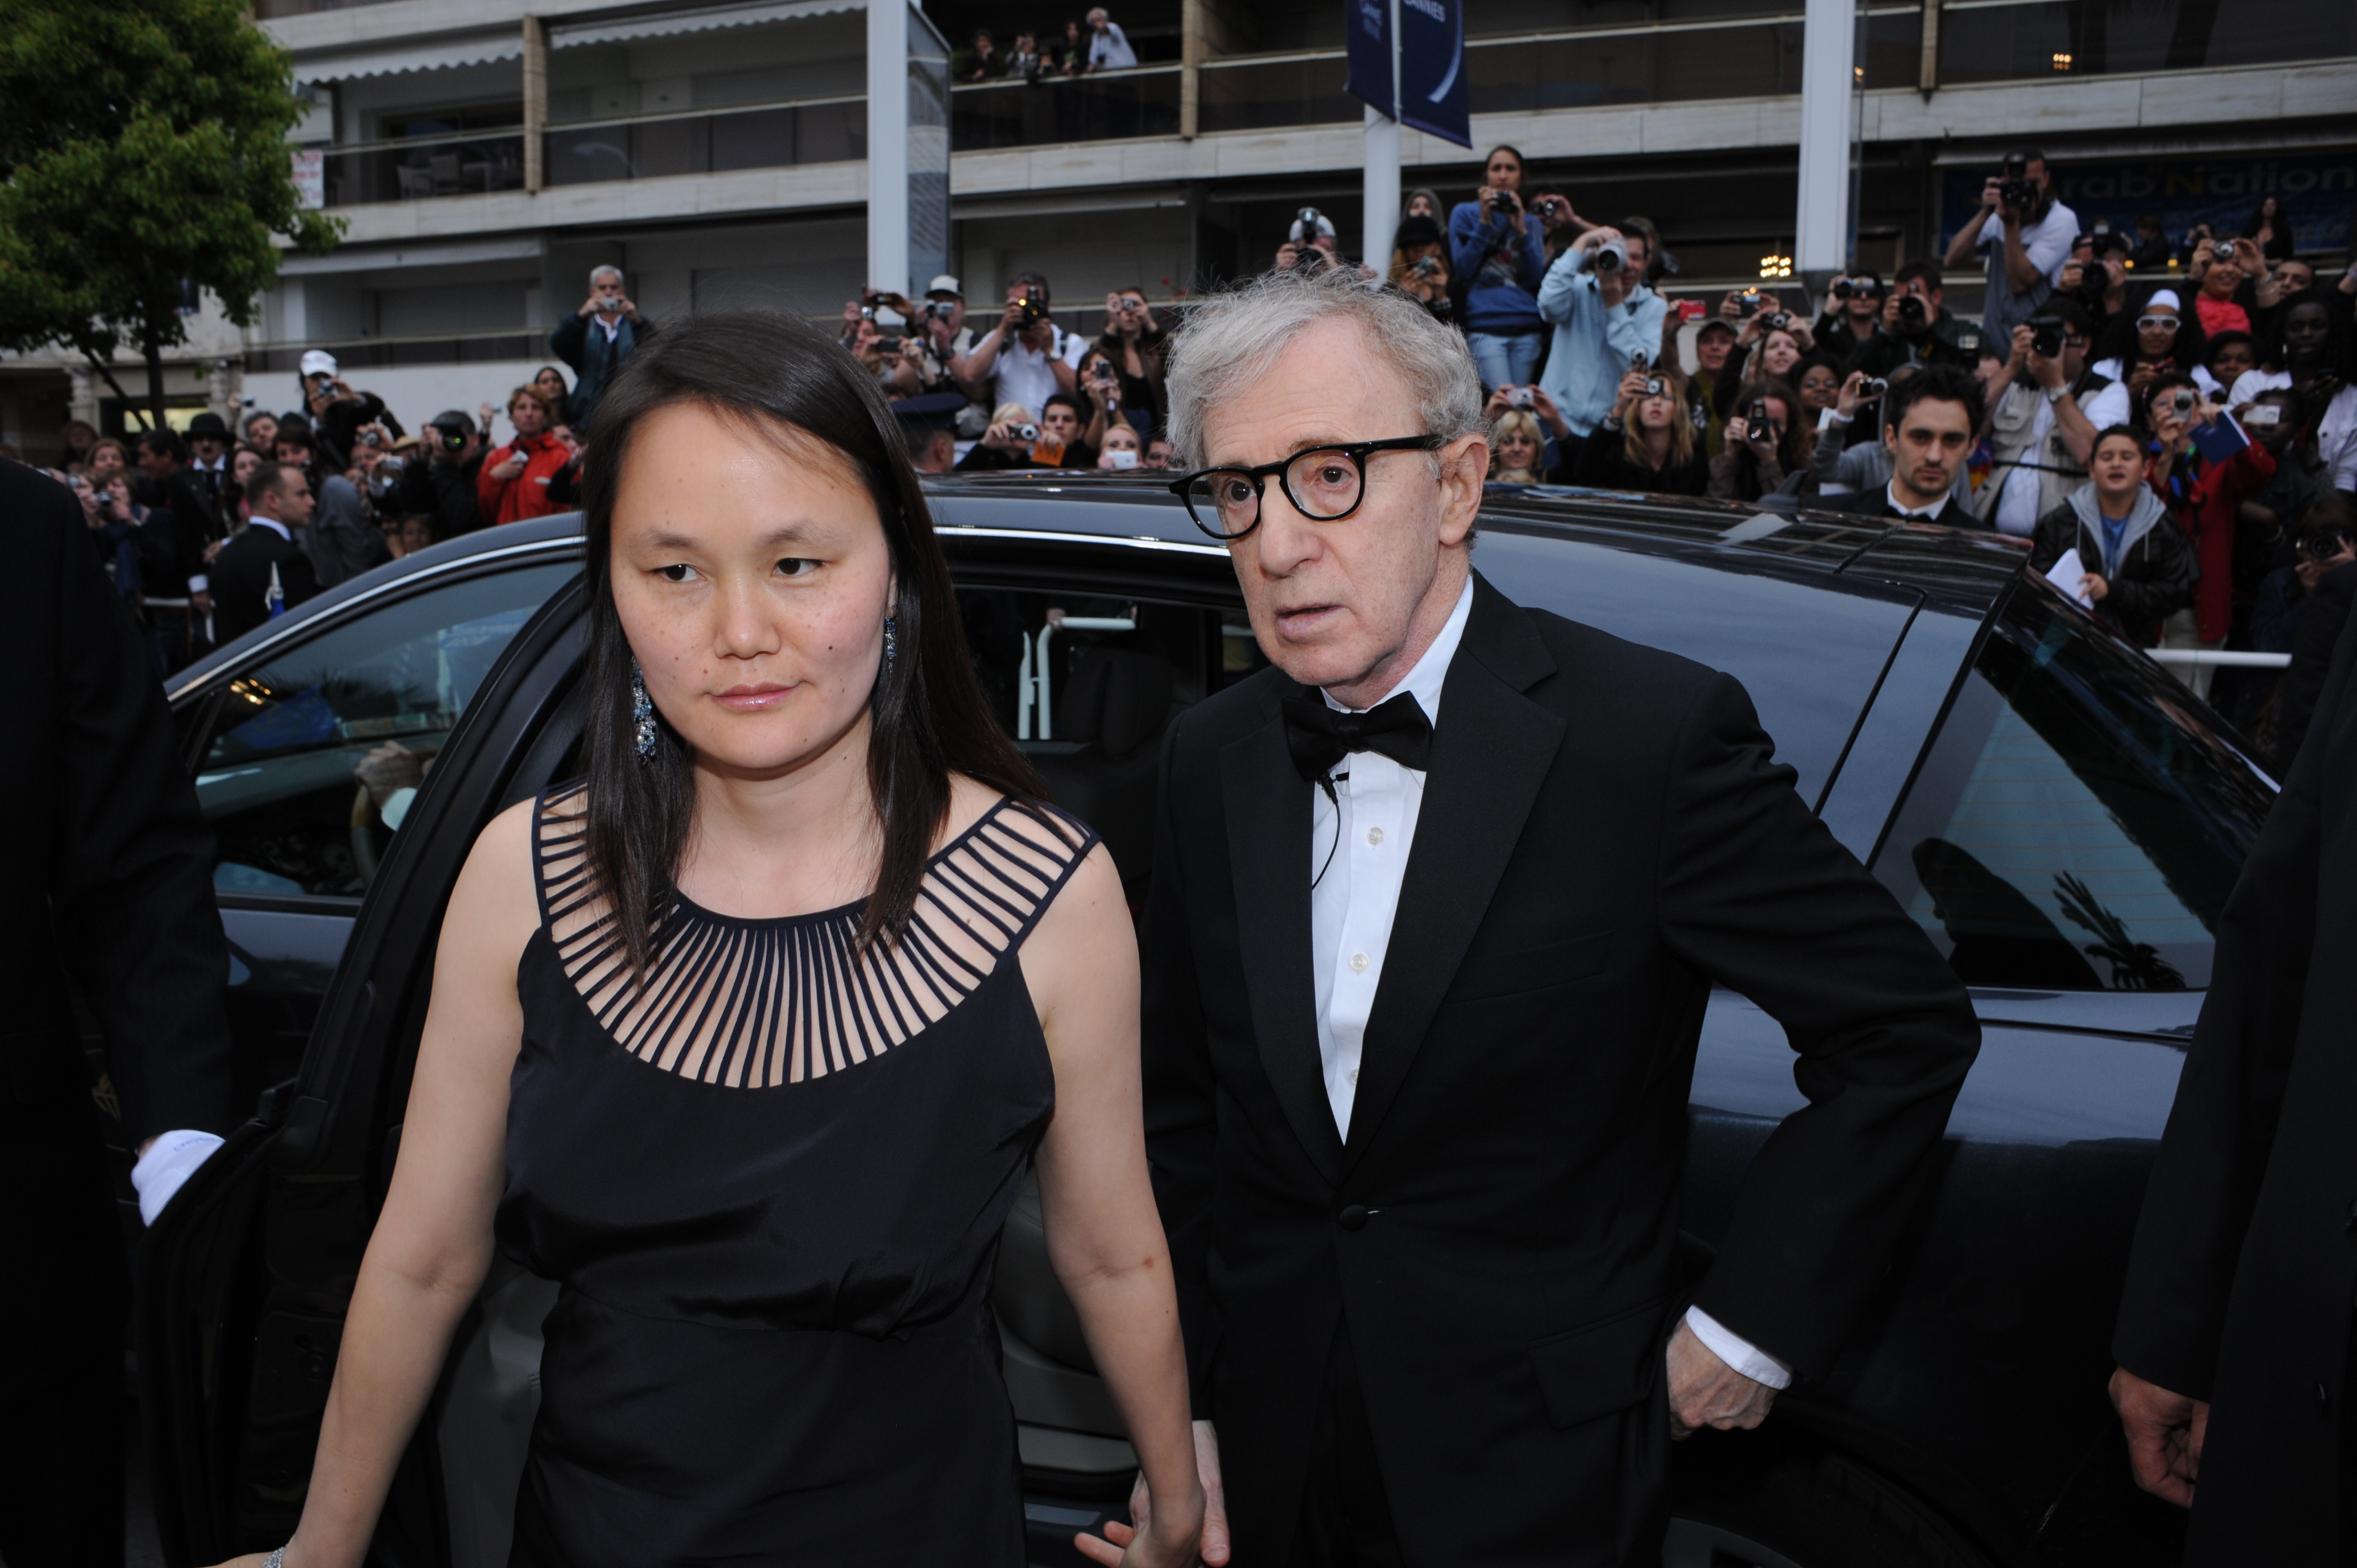 Le réalisateur Woody Allen et sa femme Soon-Yi Previn assistent à la première de "Vous allez rencontrer un bel et sombre inconnu" au Palais des Festivals lors du 63ème Festival de Cannes le 15 mai 2010 à Cannes, France. | Source : Getty Images